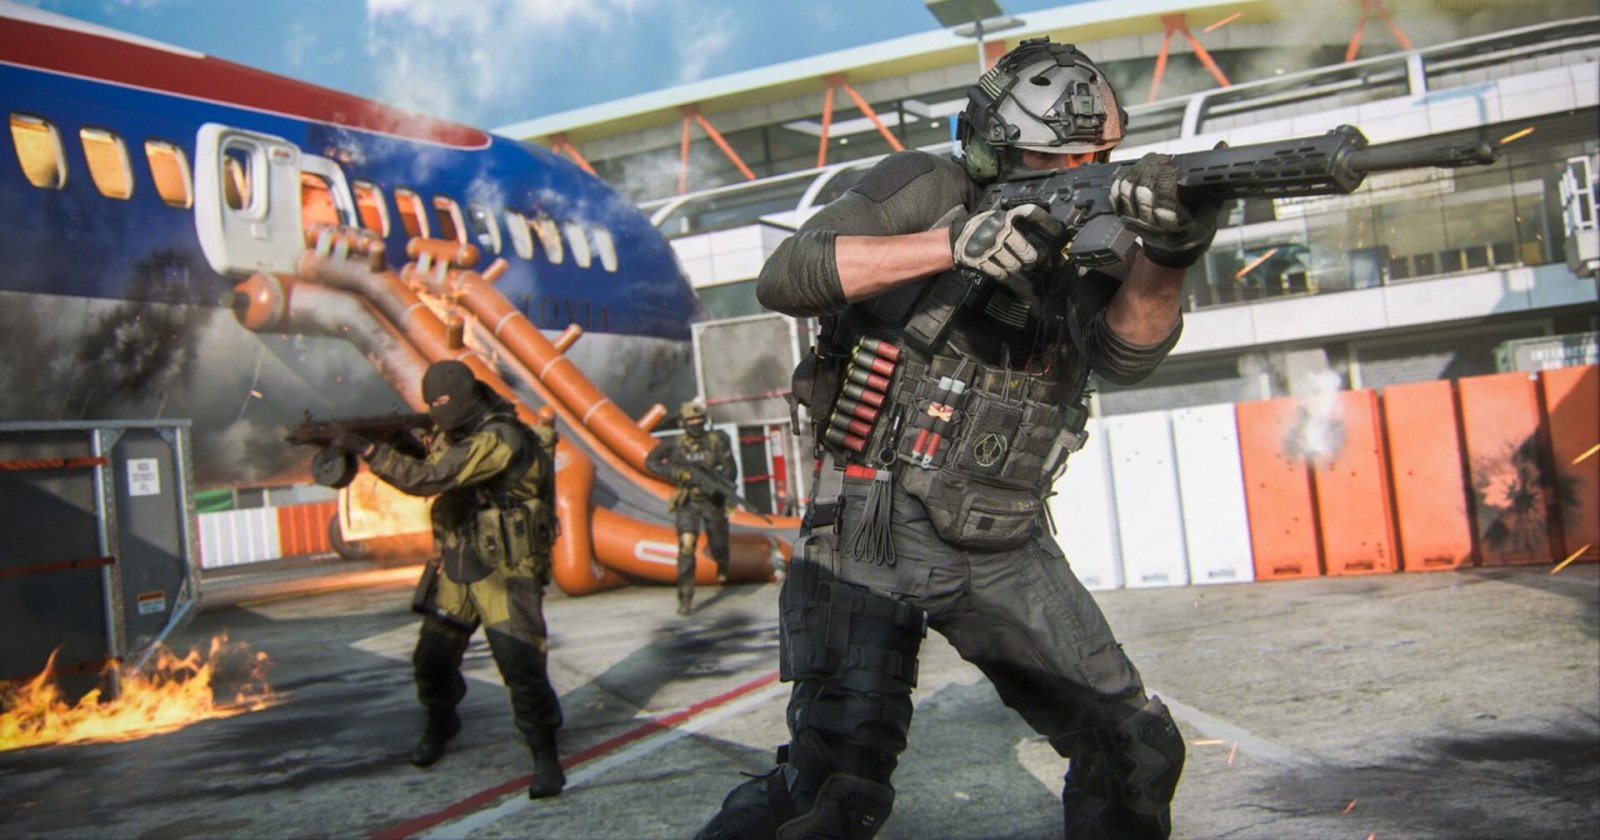 ขาลง ? เกม ‘Call of Duty: Modern Warfare 3’ ยอดขายลดลง เมื่อเทียบกับภาคก่อน